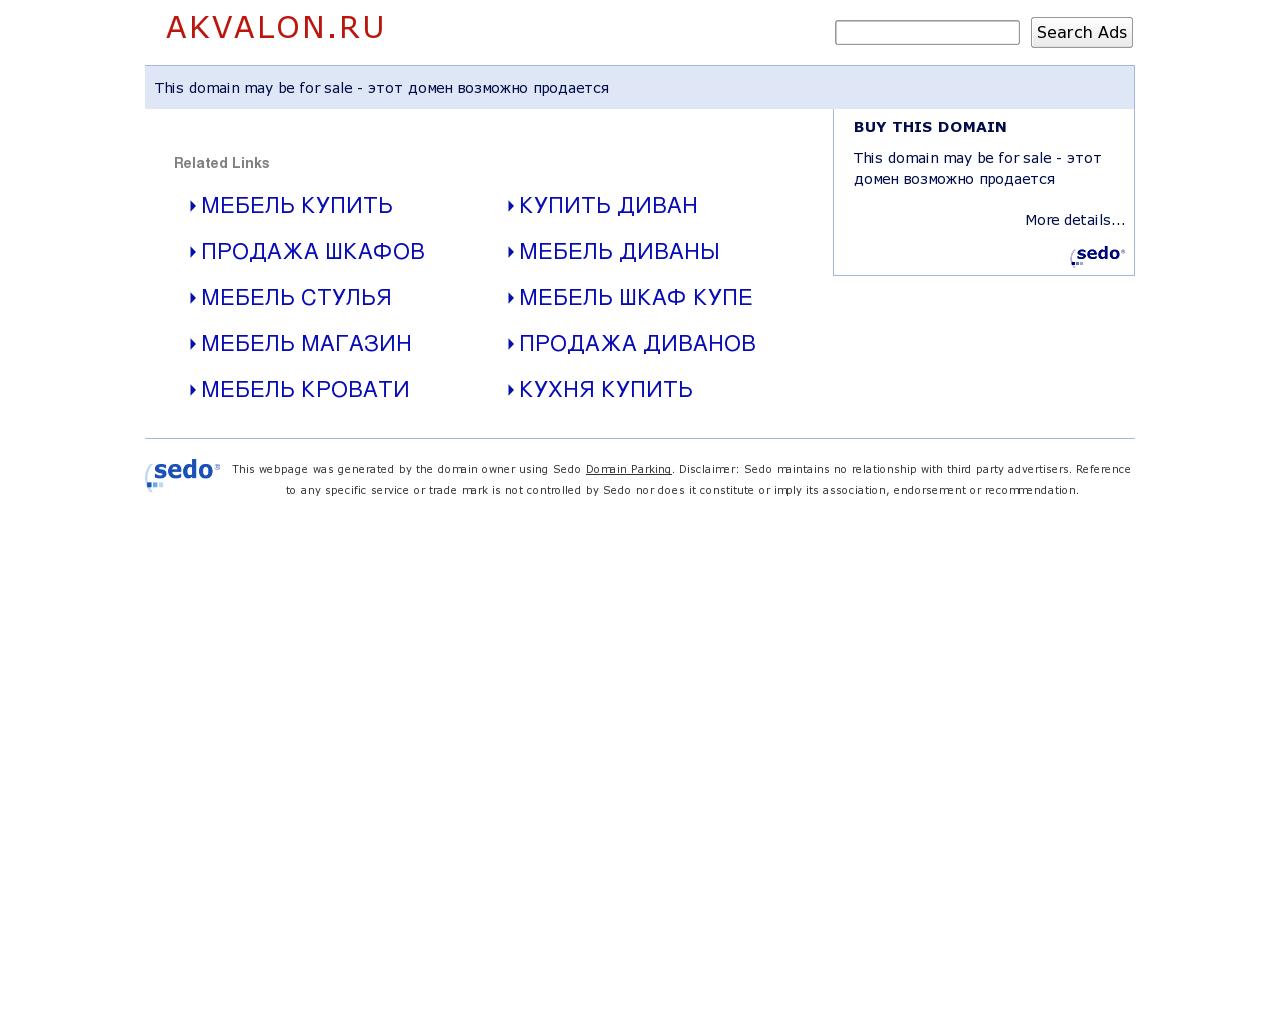 Изображение сайта akvalon.ru в разрешении 1280x1024